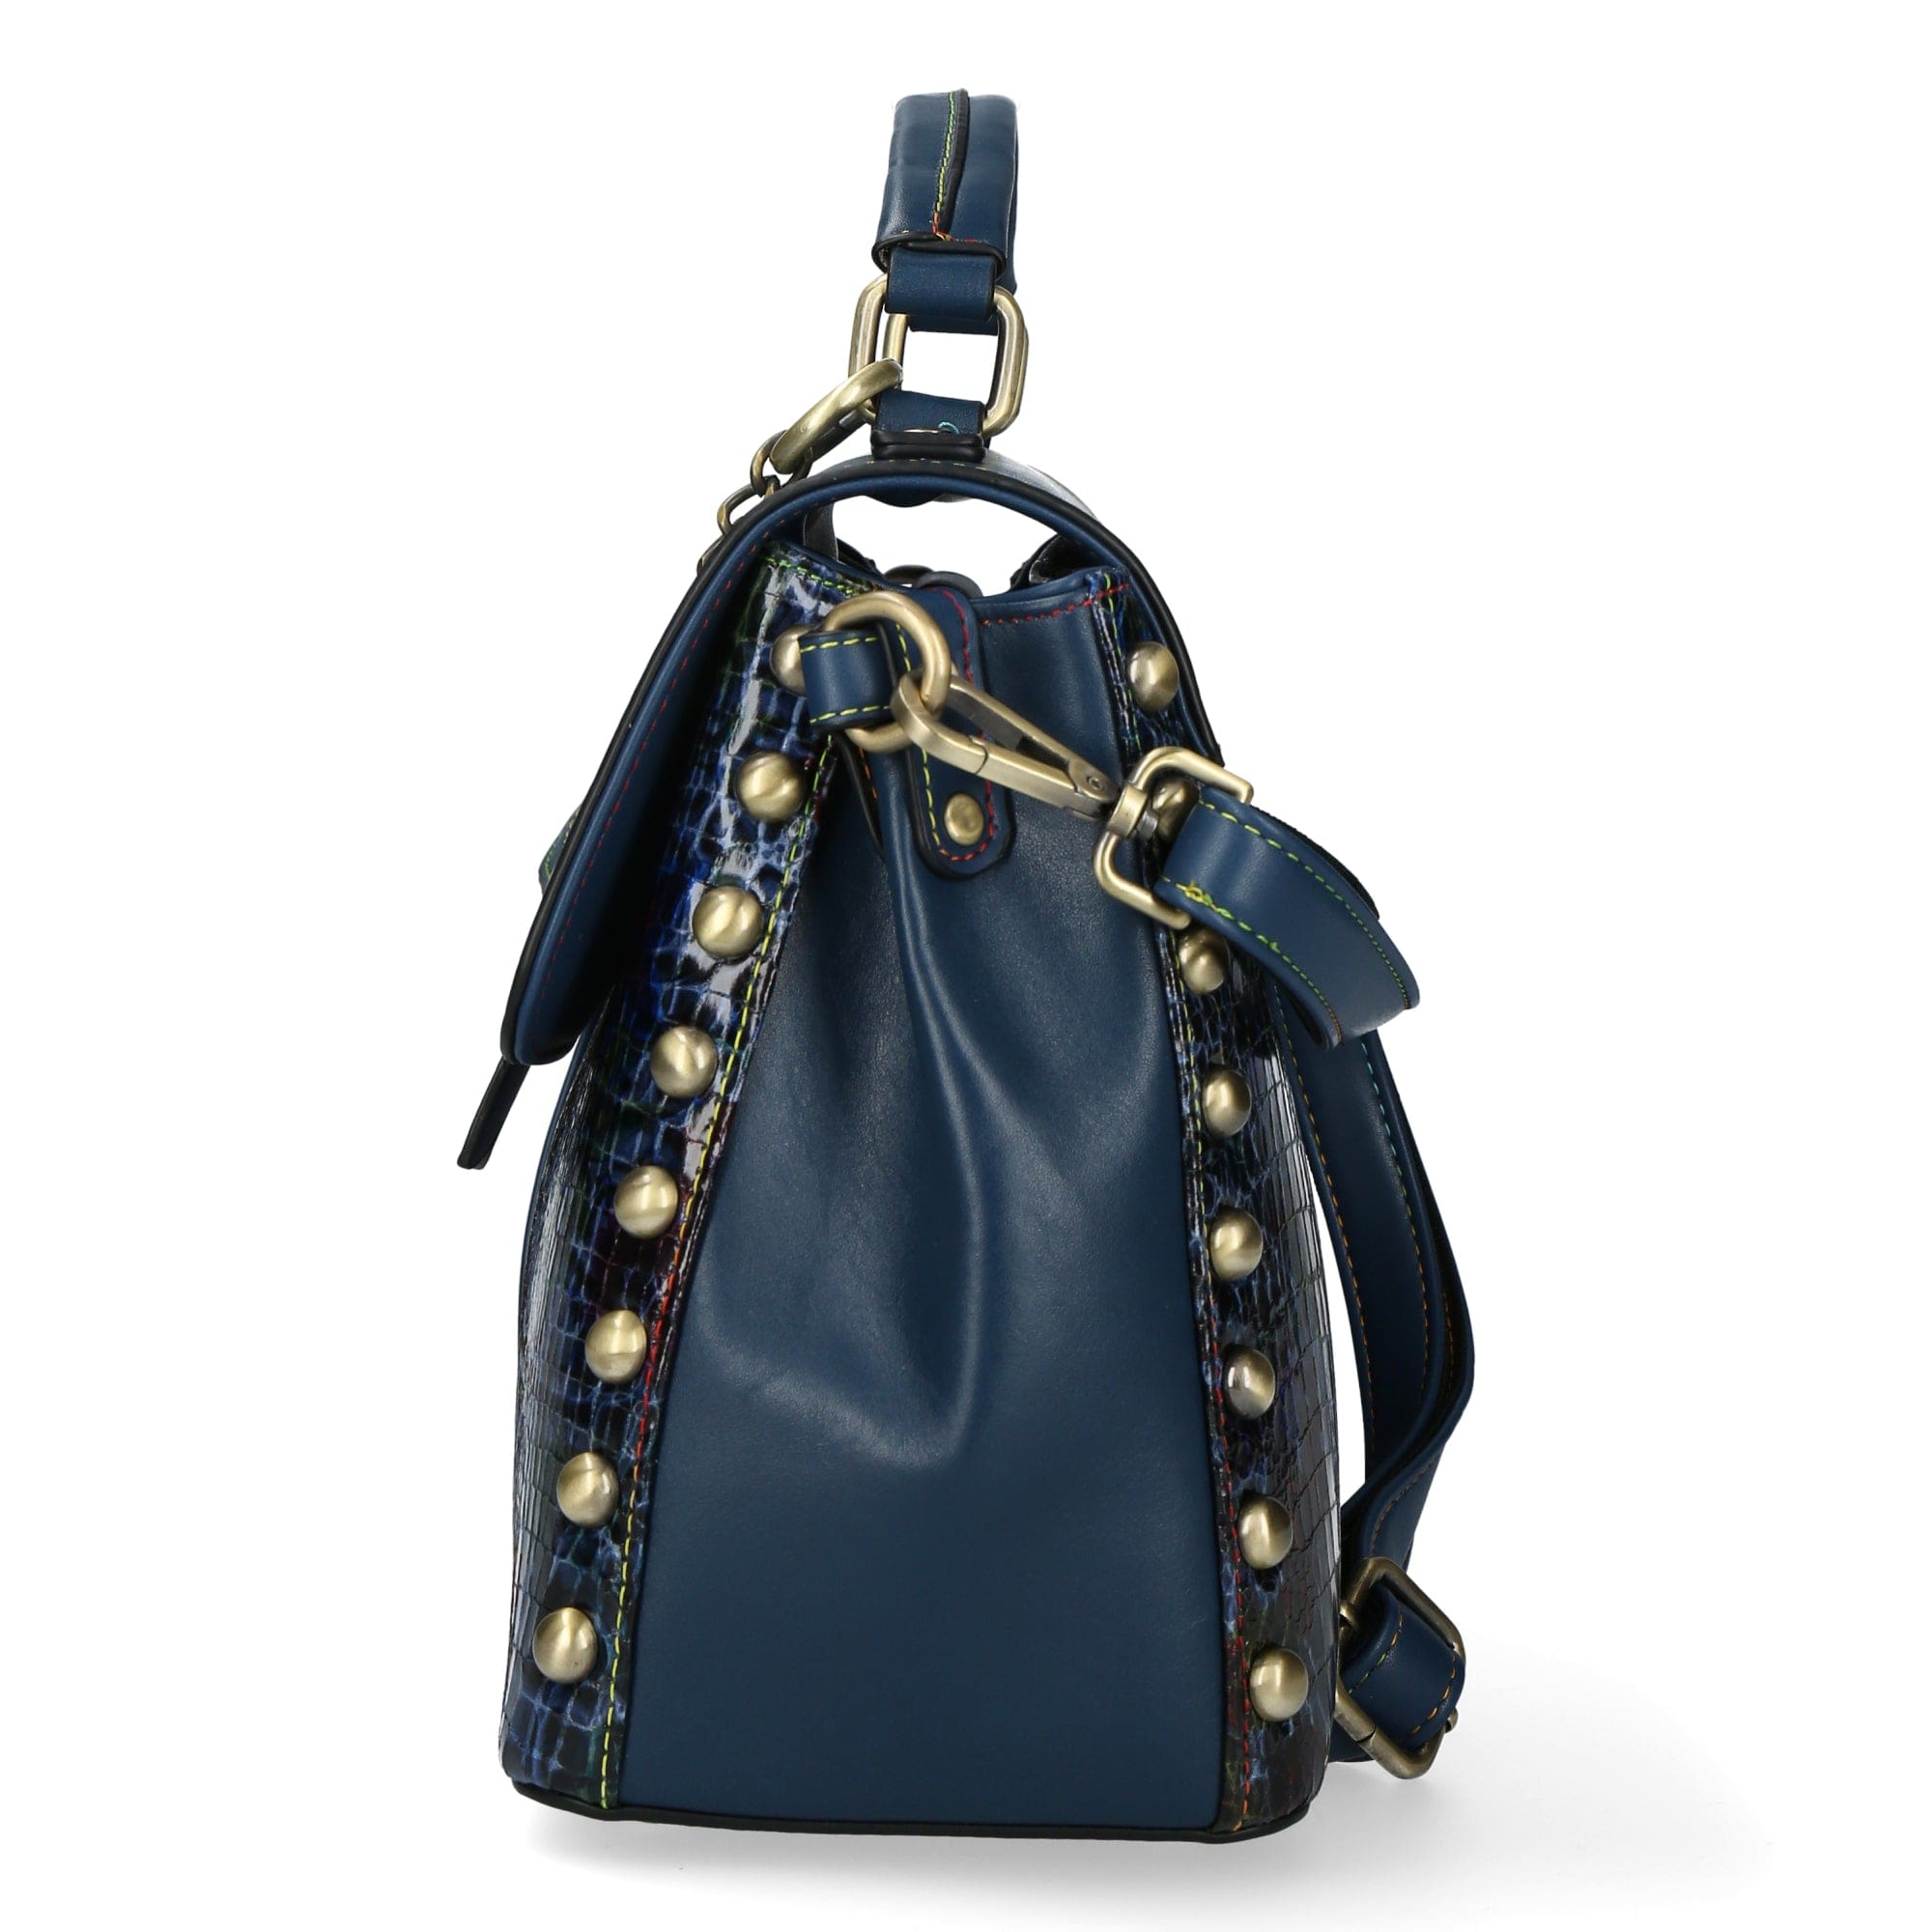 Leather Handbag 3382J - Bag